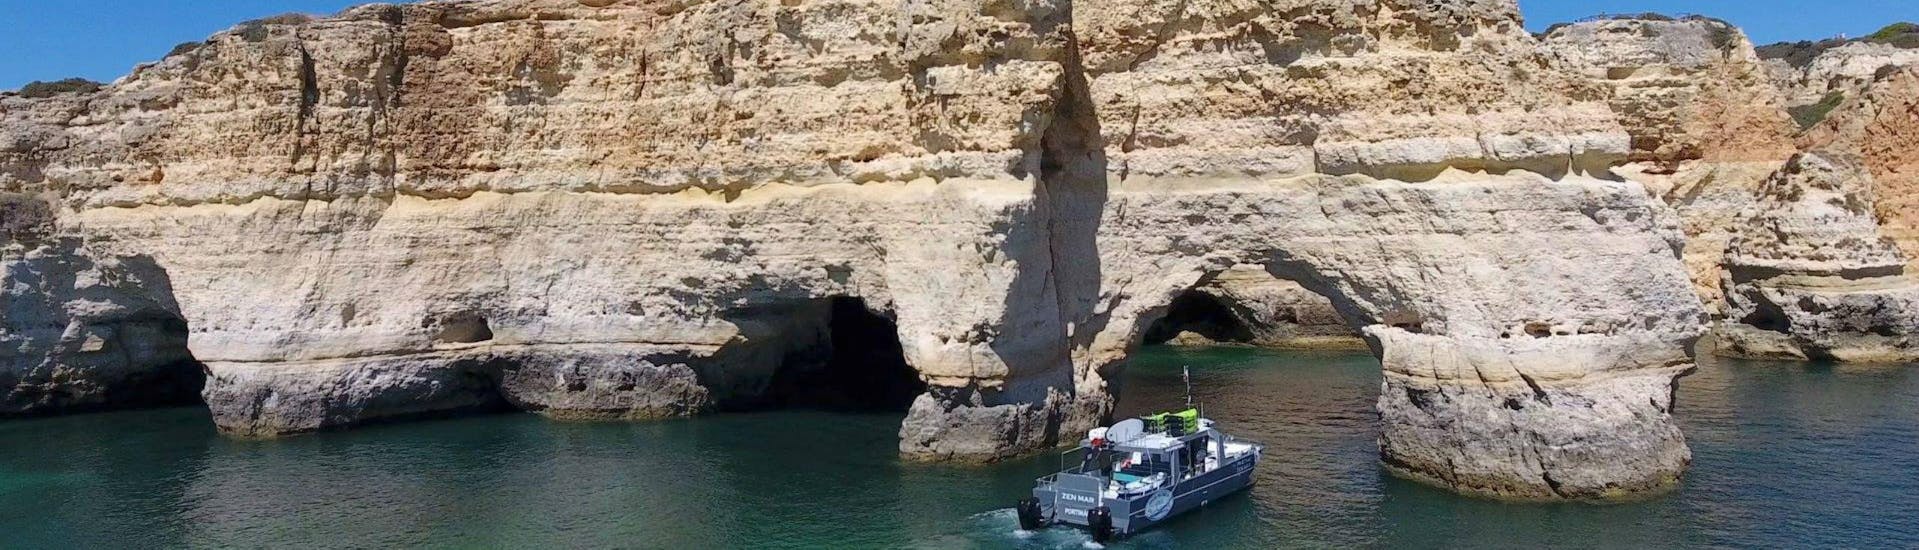 El catamarán operado por SeaAlgarve Albufeira se abre paso a lo largo de las dramáticas formaciones rocosas de la costa del Algarve durante la excursión en barco de Benagil con Kayak o SUP.